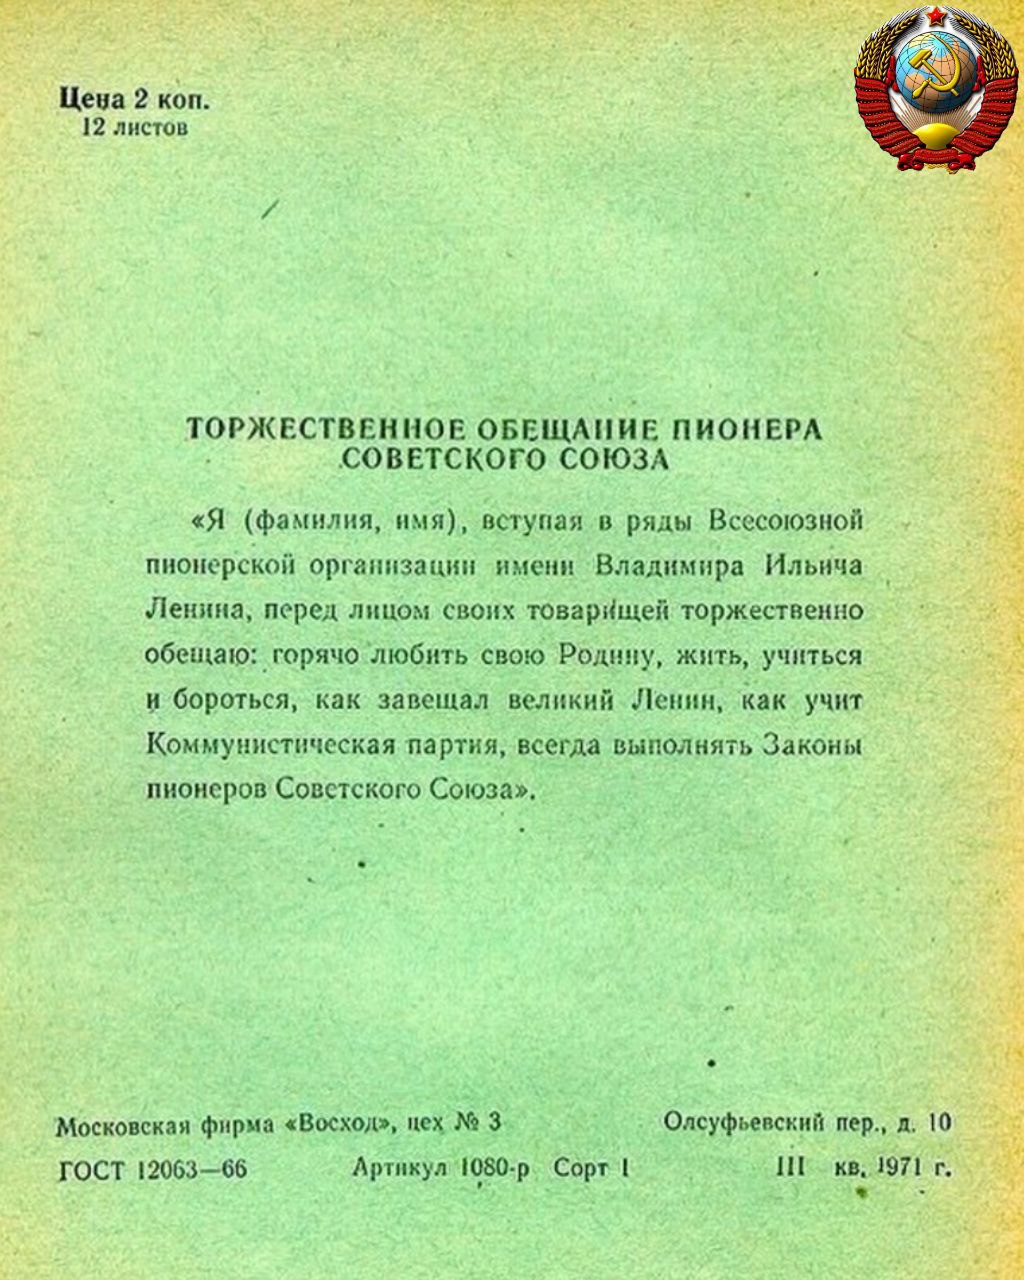 Торжественная клятва пионера советского Союза